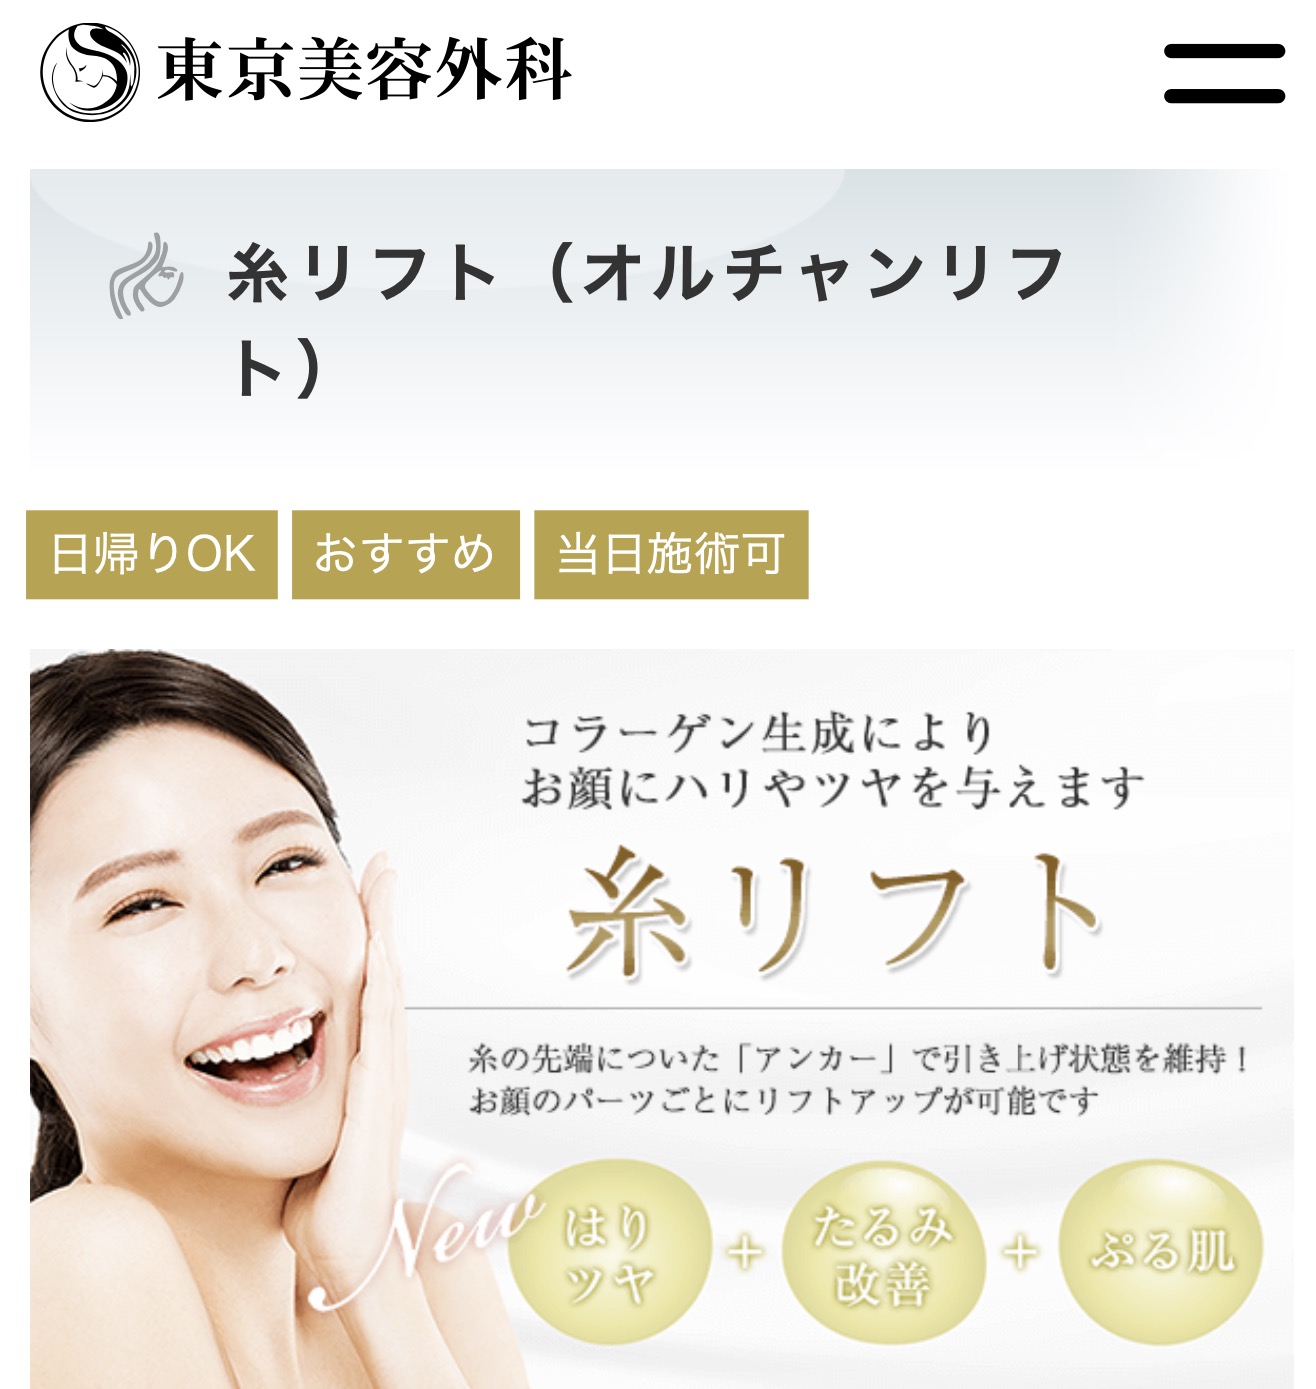 東京美容外科公式サイト